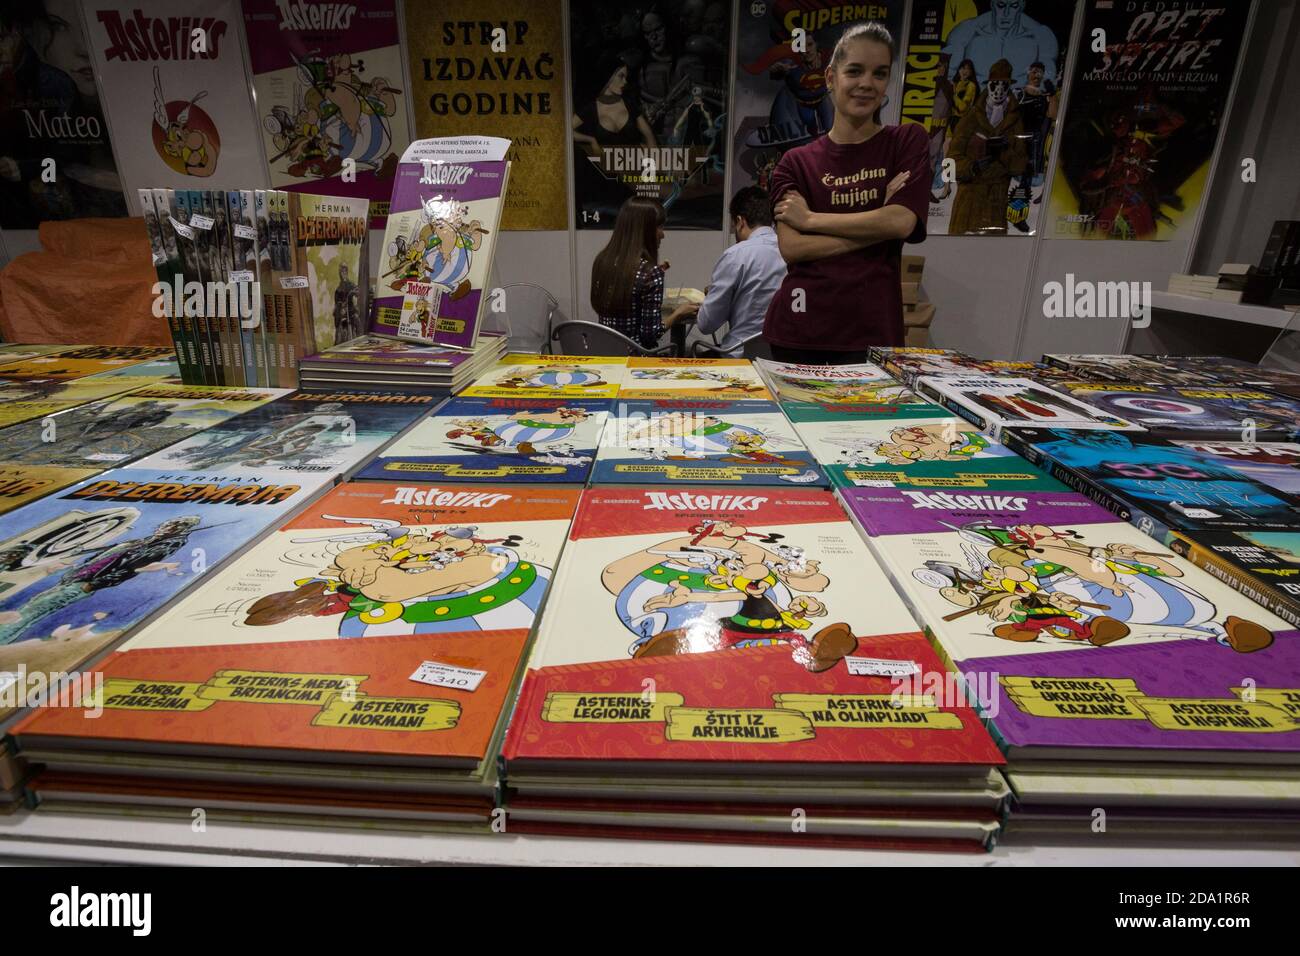 BELGRADO, SERBIA - 25 OTTOBRE 2019: Copertine di strisce comiche Asterix e Obelix, in vendita in un negozio di fumetti retrò a Belgrado. Asterix è un francese Foto Stock